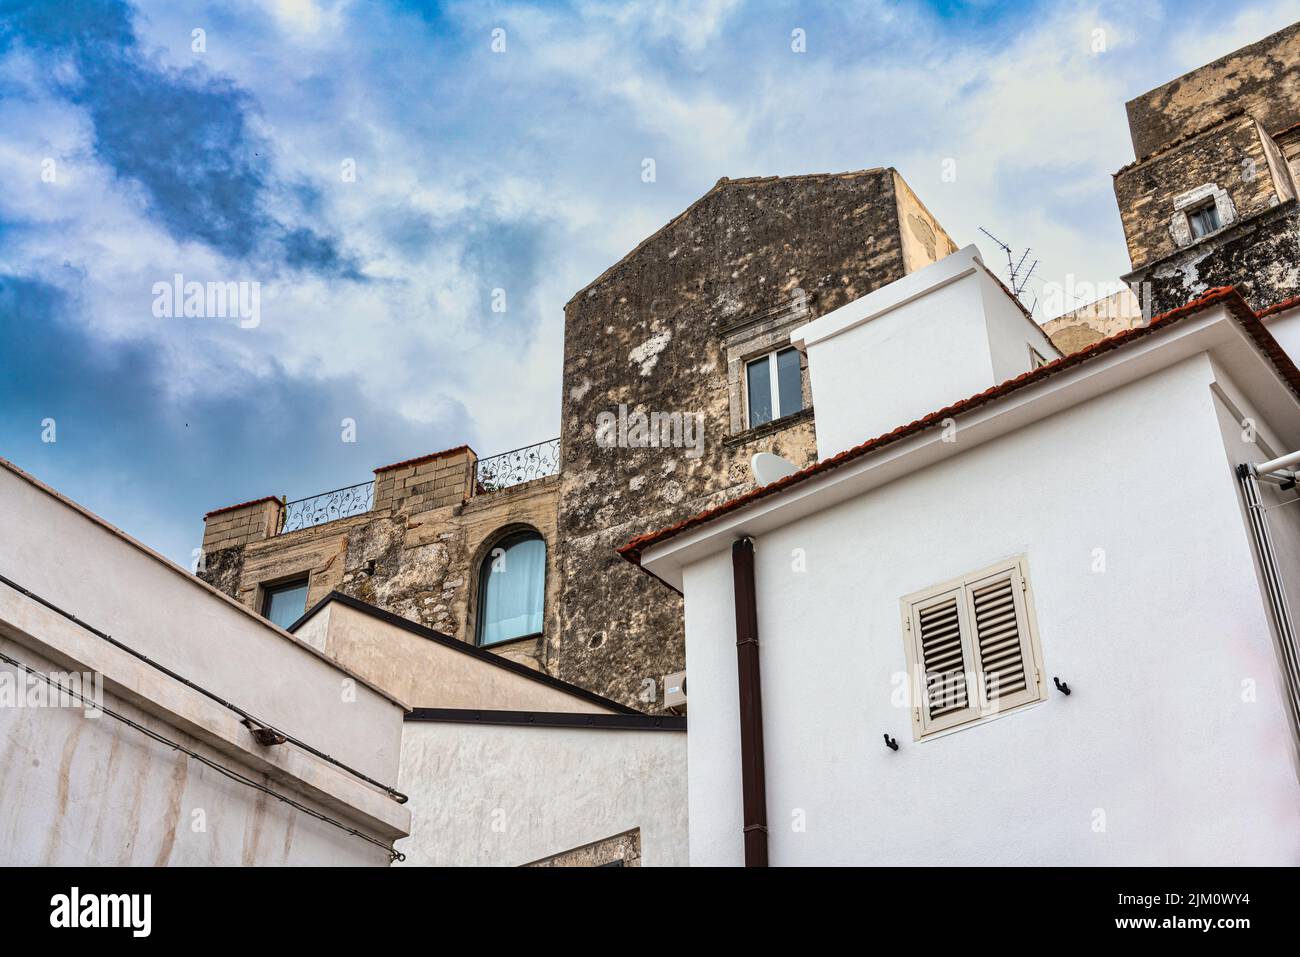 Casas típicas, encaramadas unas sobre otras, en el pueblo costero de Apulia de Peschici. Peschici, provincia de Foggia, Apulia, Italia, Europa Foto de stock